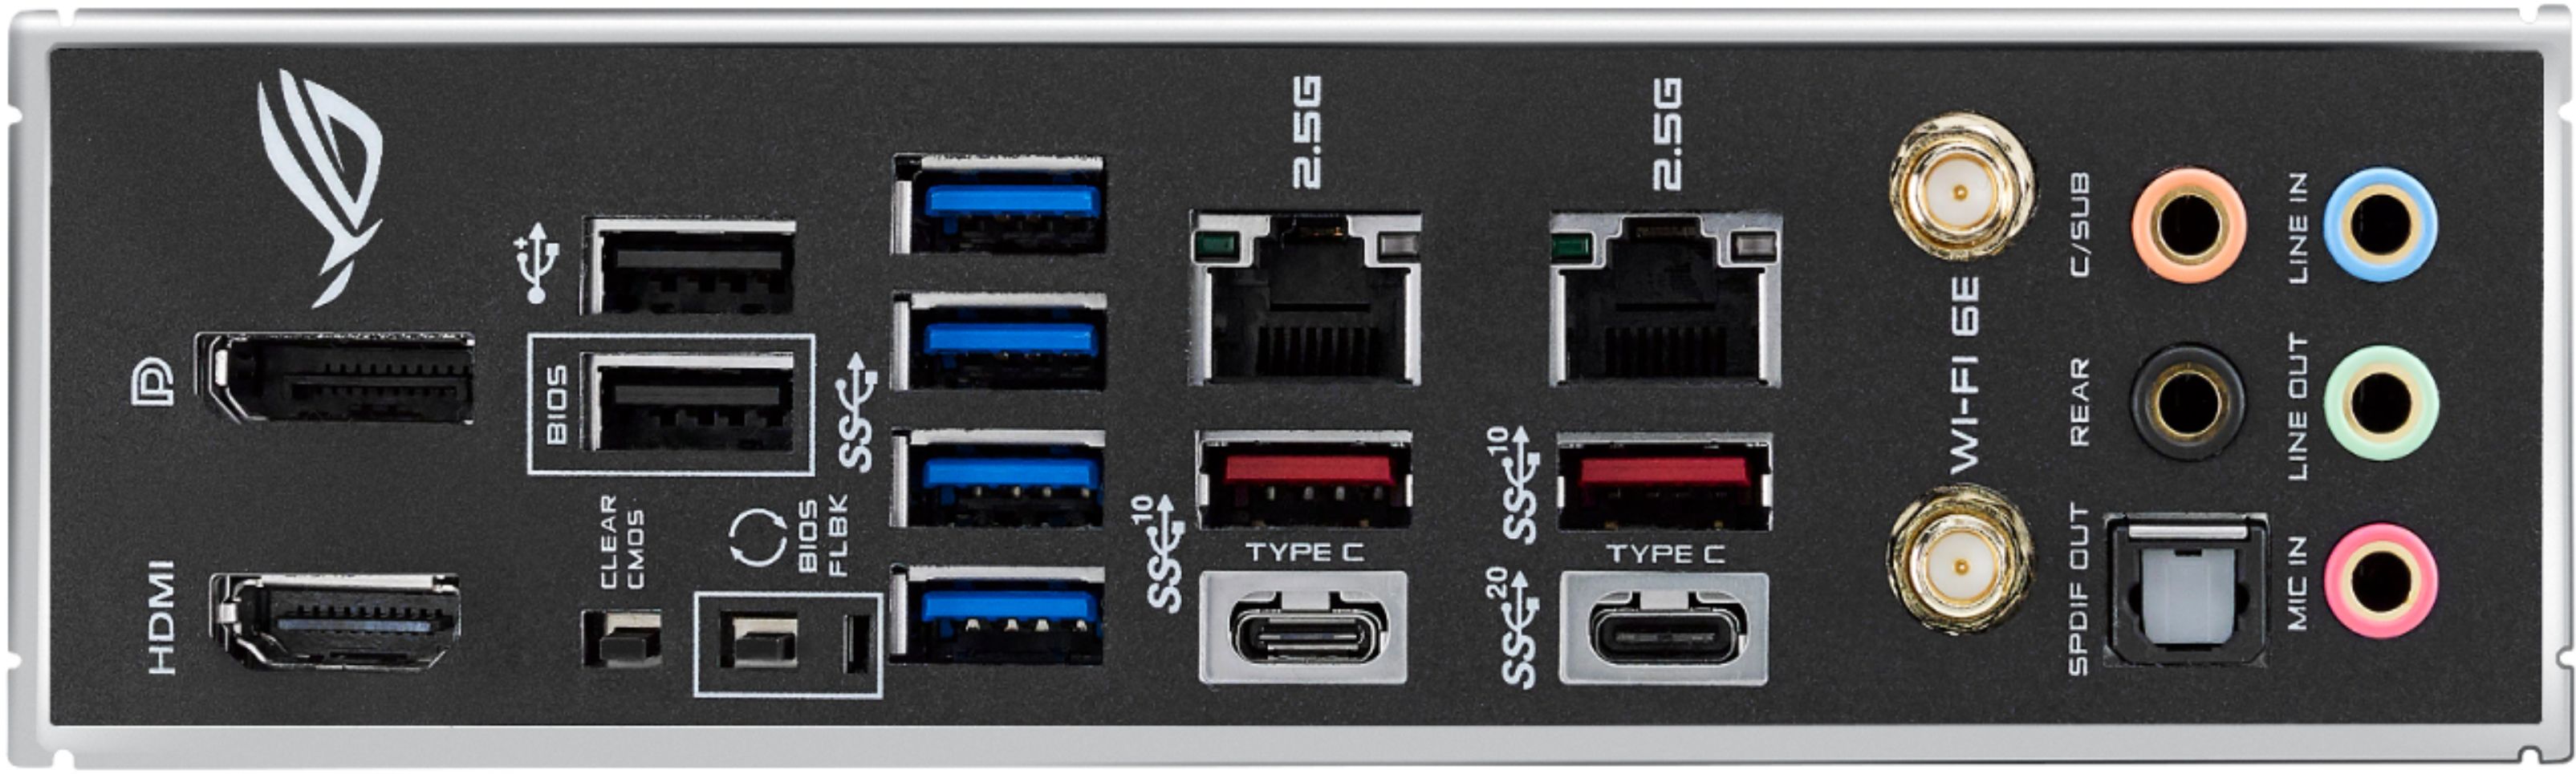 ASUS PRIME Z590-A Socket LGA 1200 USB 3.2 Intel Motherboard PRIME Z590-A -  Best Buy